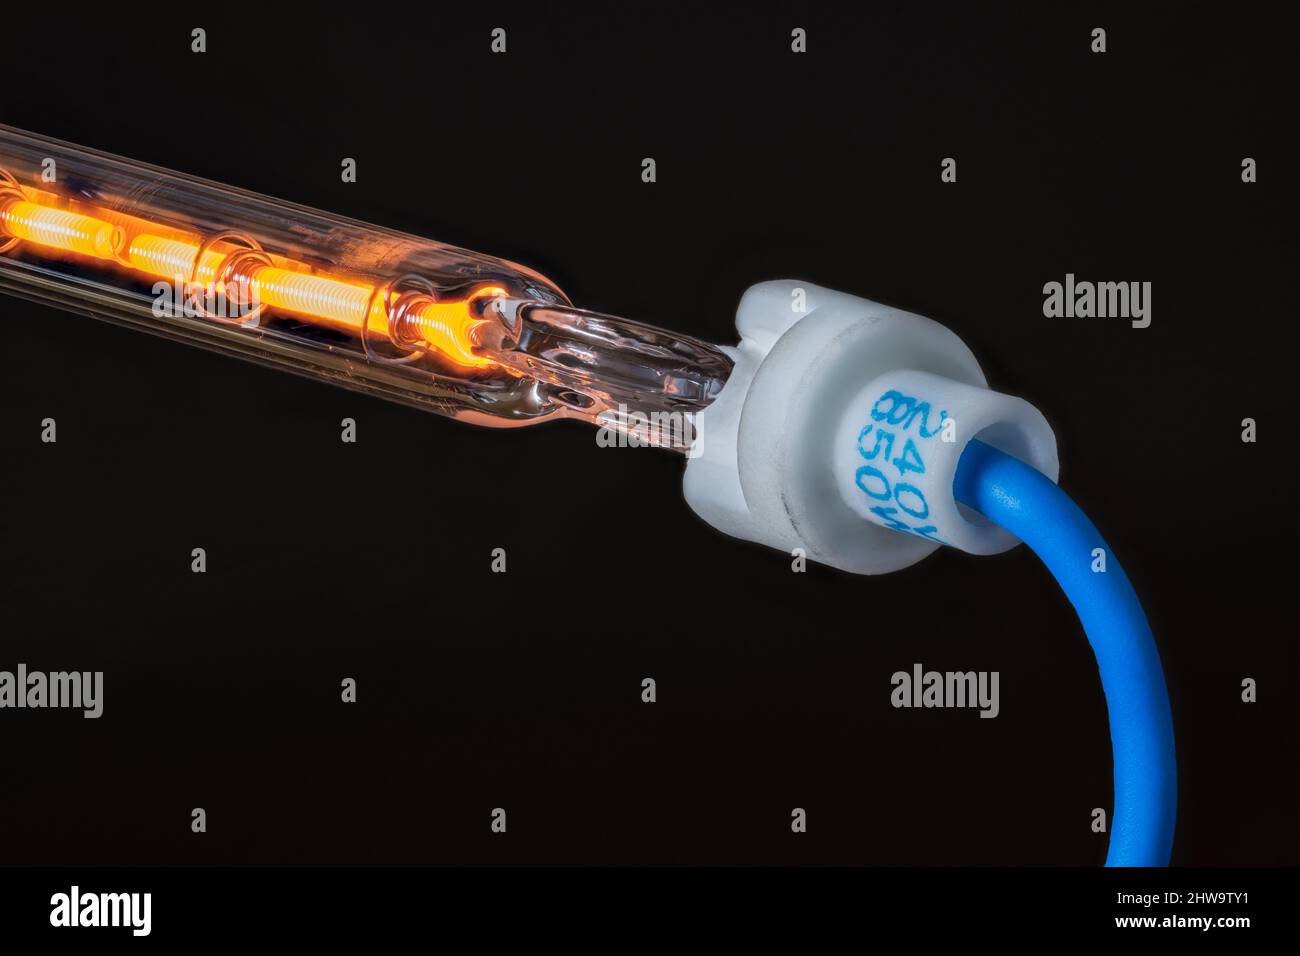 Detalle del cable de resistencia caliente en tubo hueco de vidrio con cable azul sobre fondo negro. Flujo de corriente eléctrica a través del conductor metálico enrollado. Foto de stock